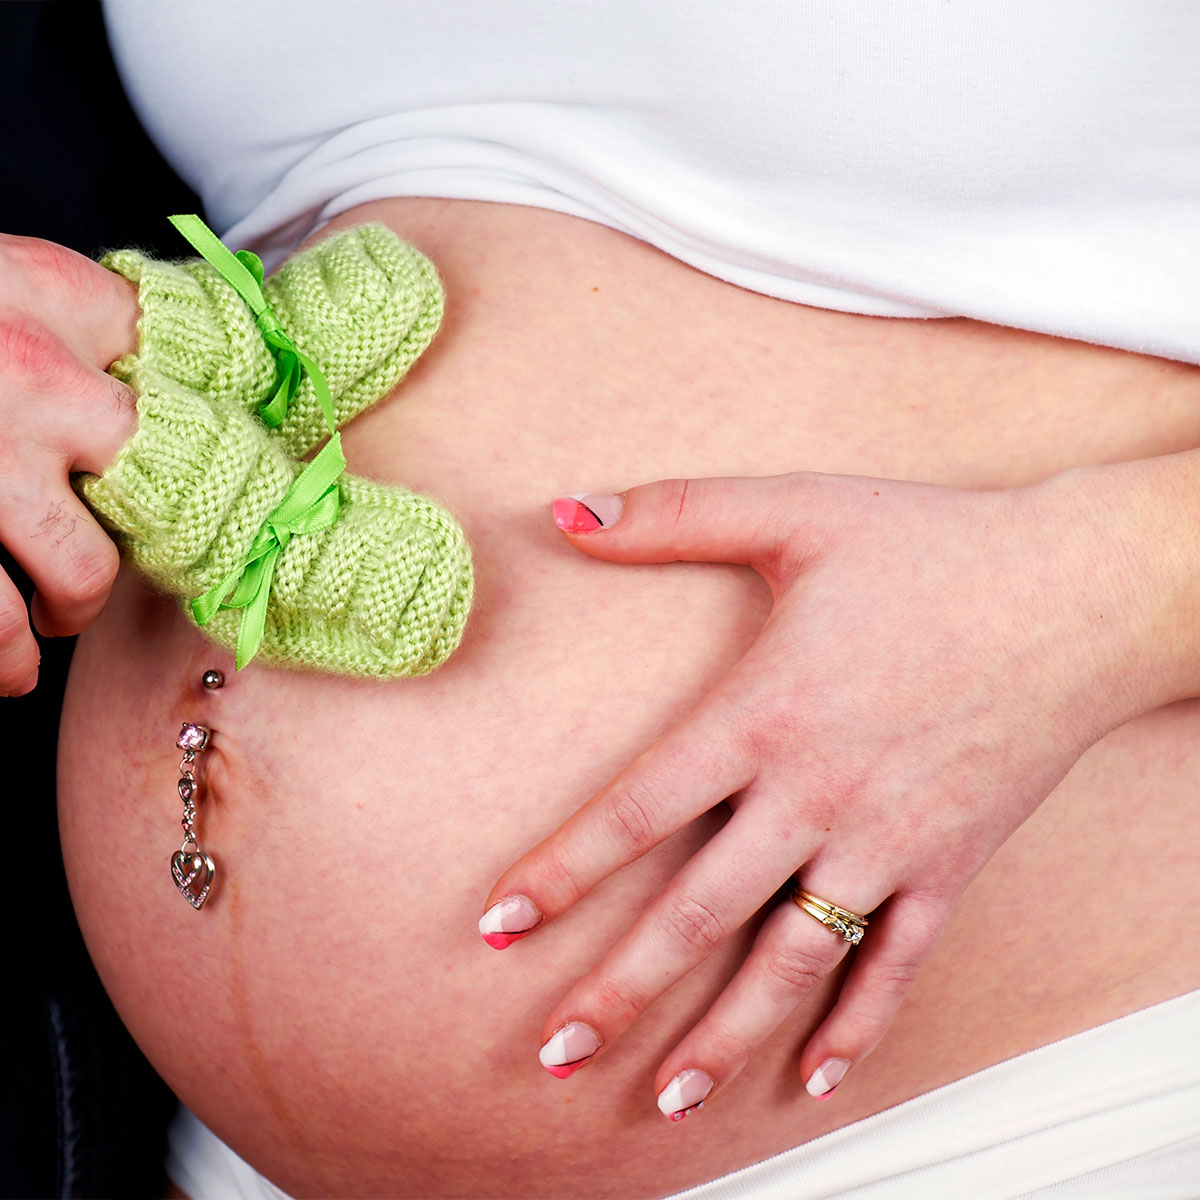 Piercings embarazo y lactancia